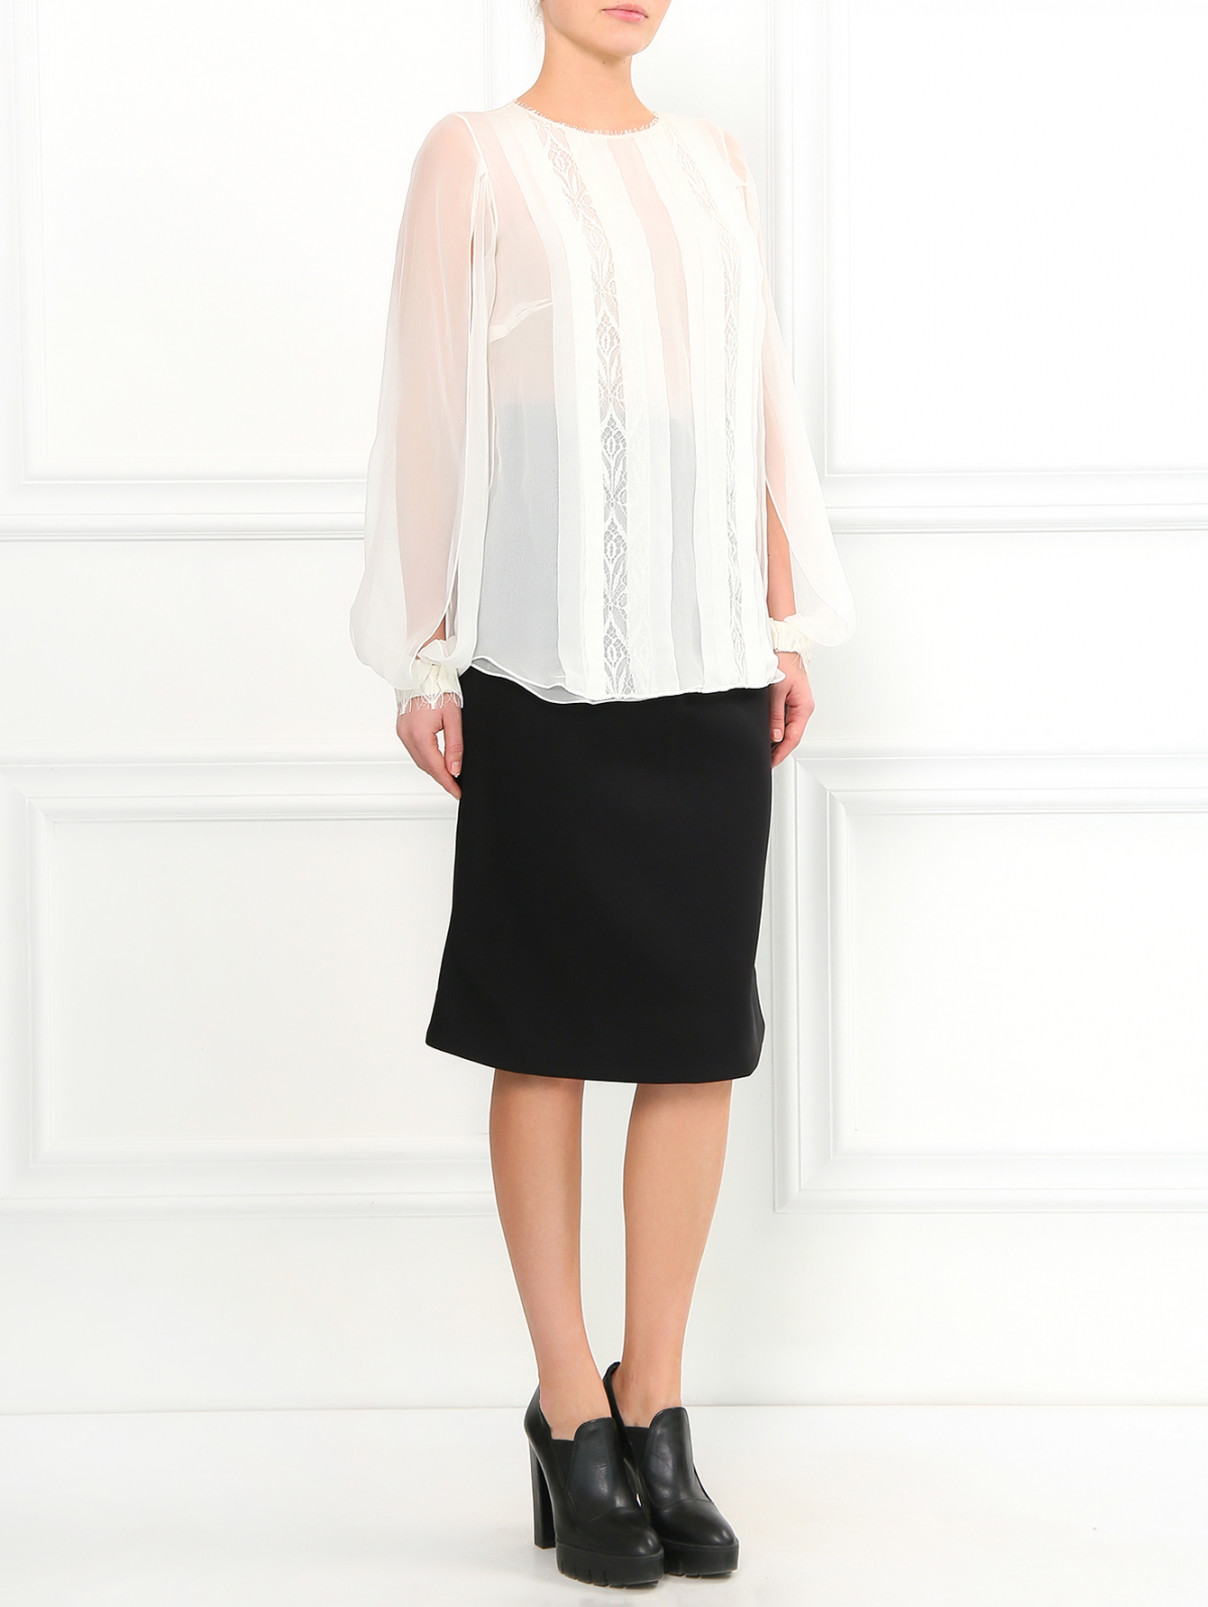 Шелковая блуза с кружевными вставками Zuhair Murad  –  Модель Общий вид  – Цвет:  Бежевый